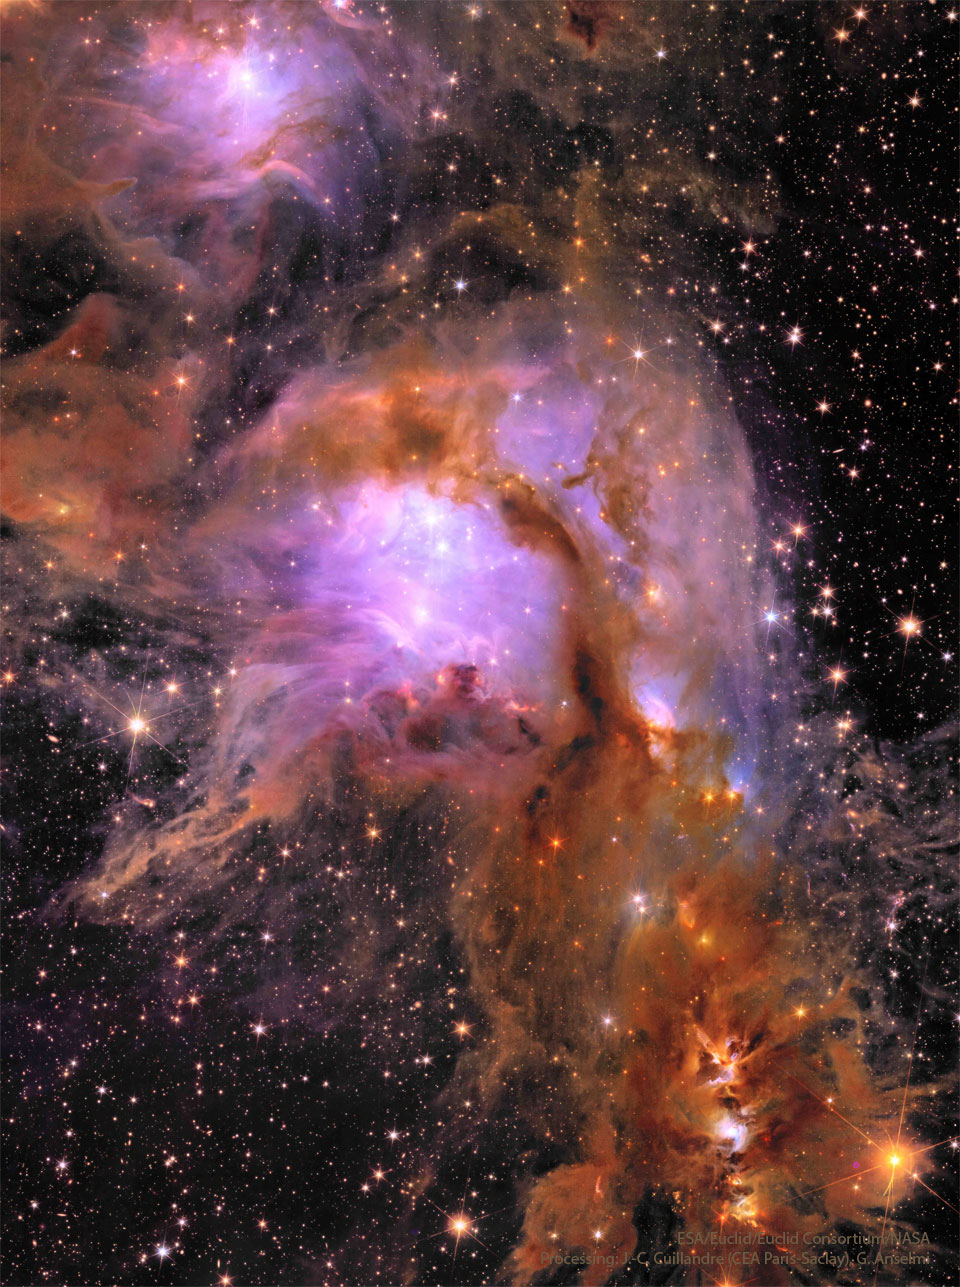 图中显示了一个充满复杂的黝黑尘埃和亮紫色星云的星场。有关更多详细信息，请参阅说明。